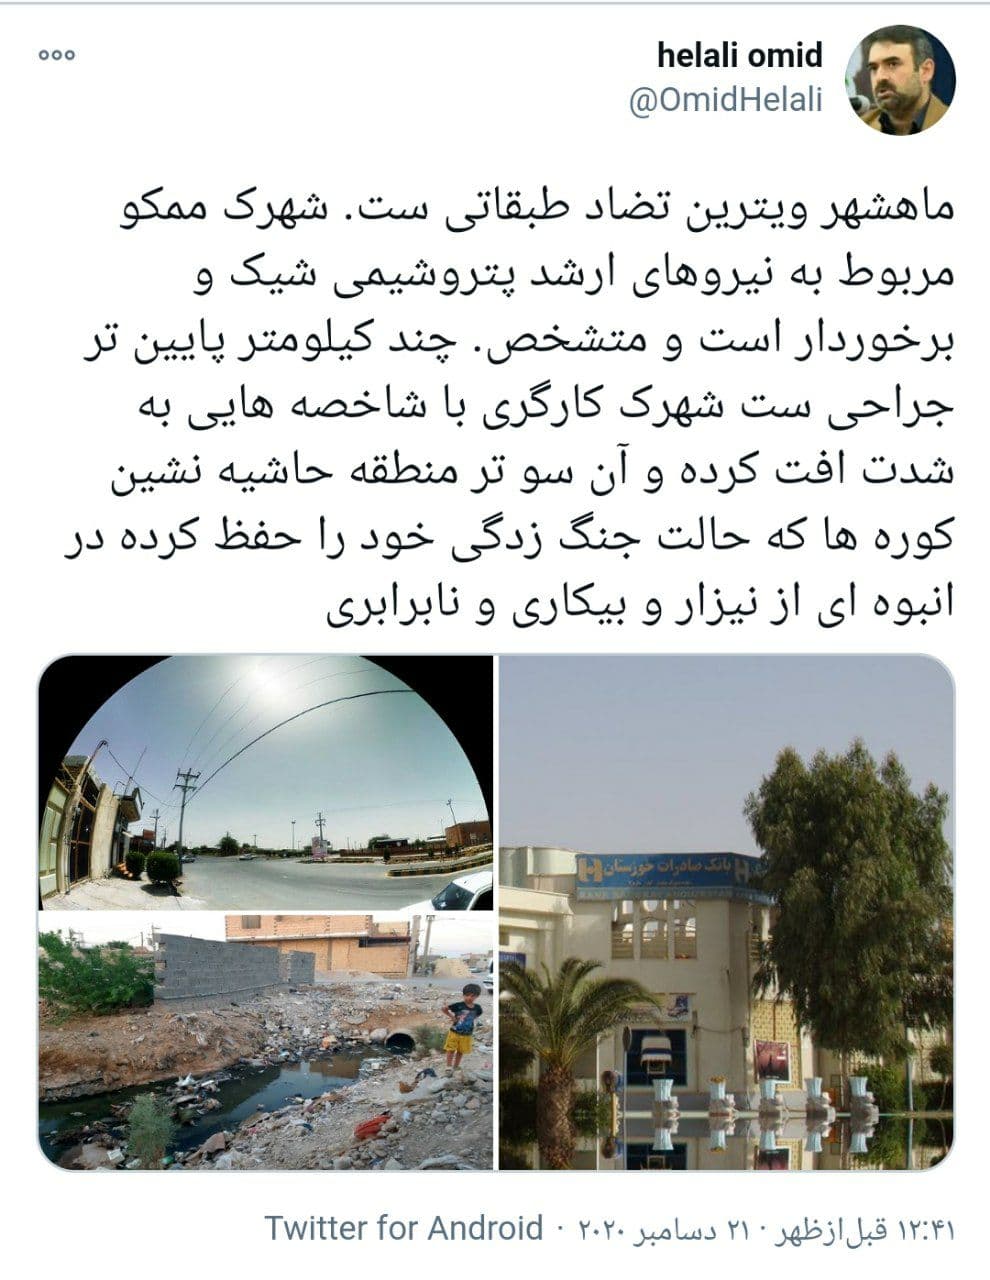 ماهشهر خوزستان، ویترین تضاد طبقاتی